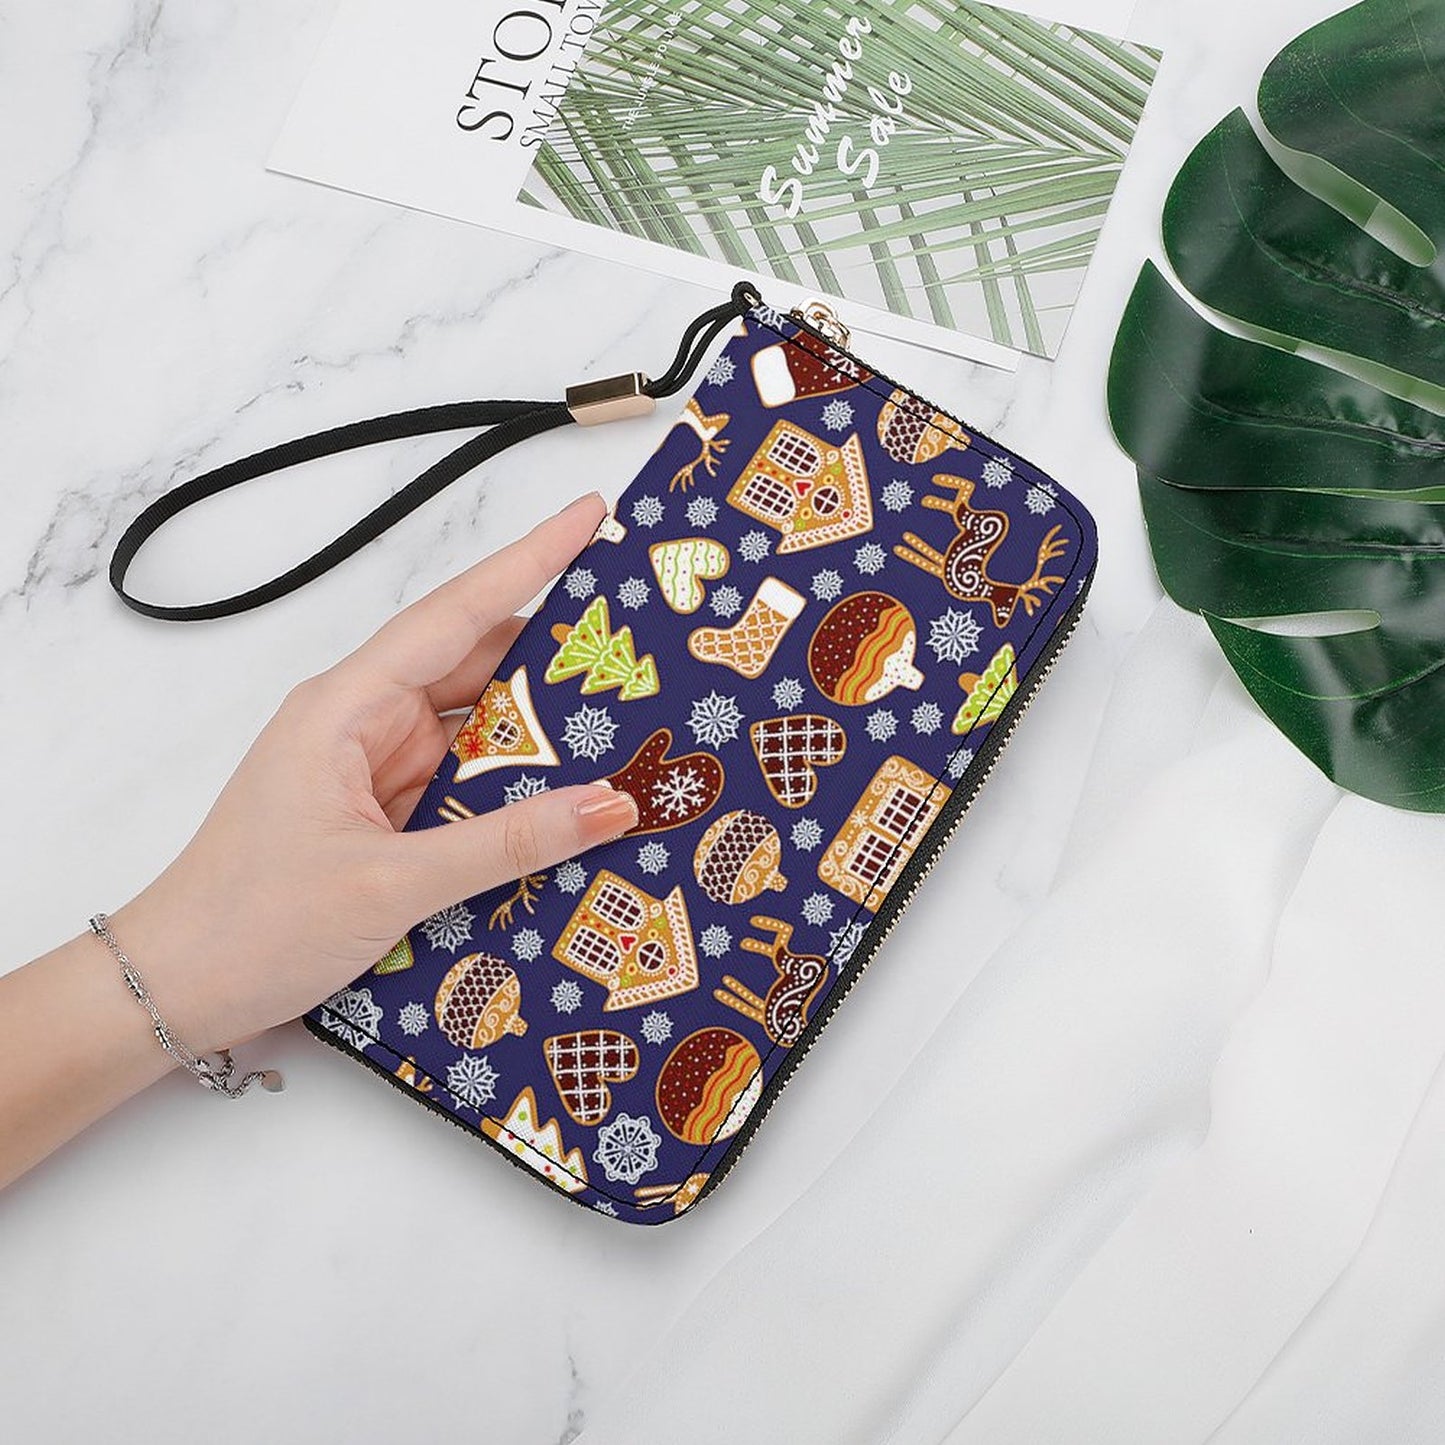 Online DIY Long Wallet Handbag 20*10.5cm